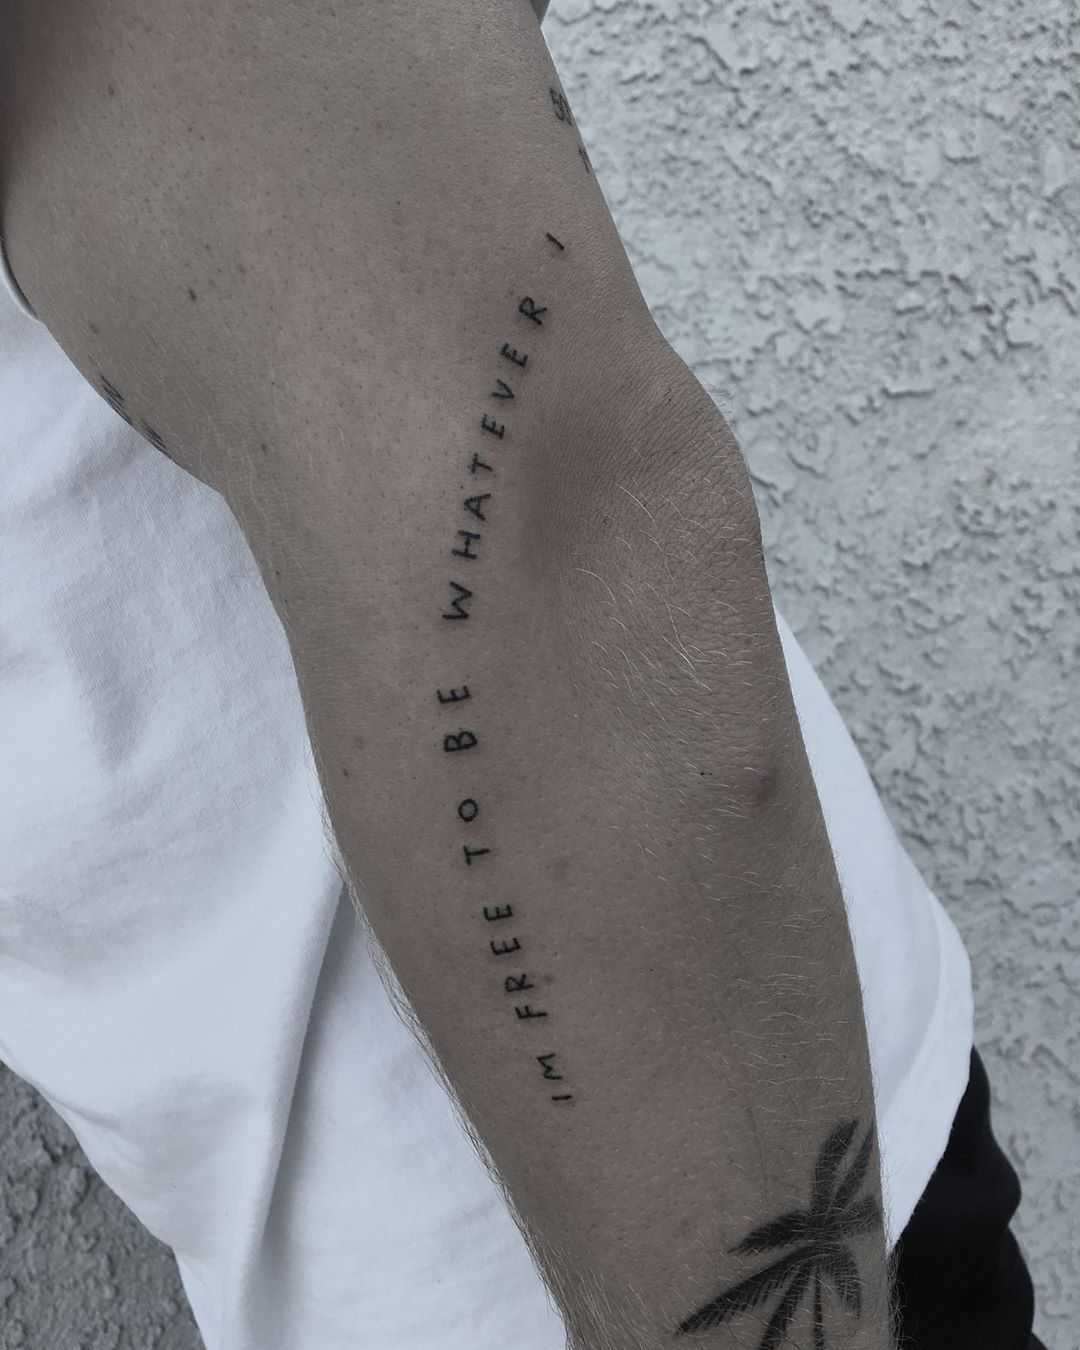 Oasis lyrics tattoo by Robbie Ra Moore